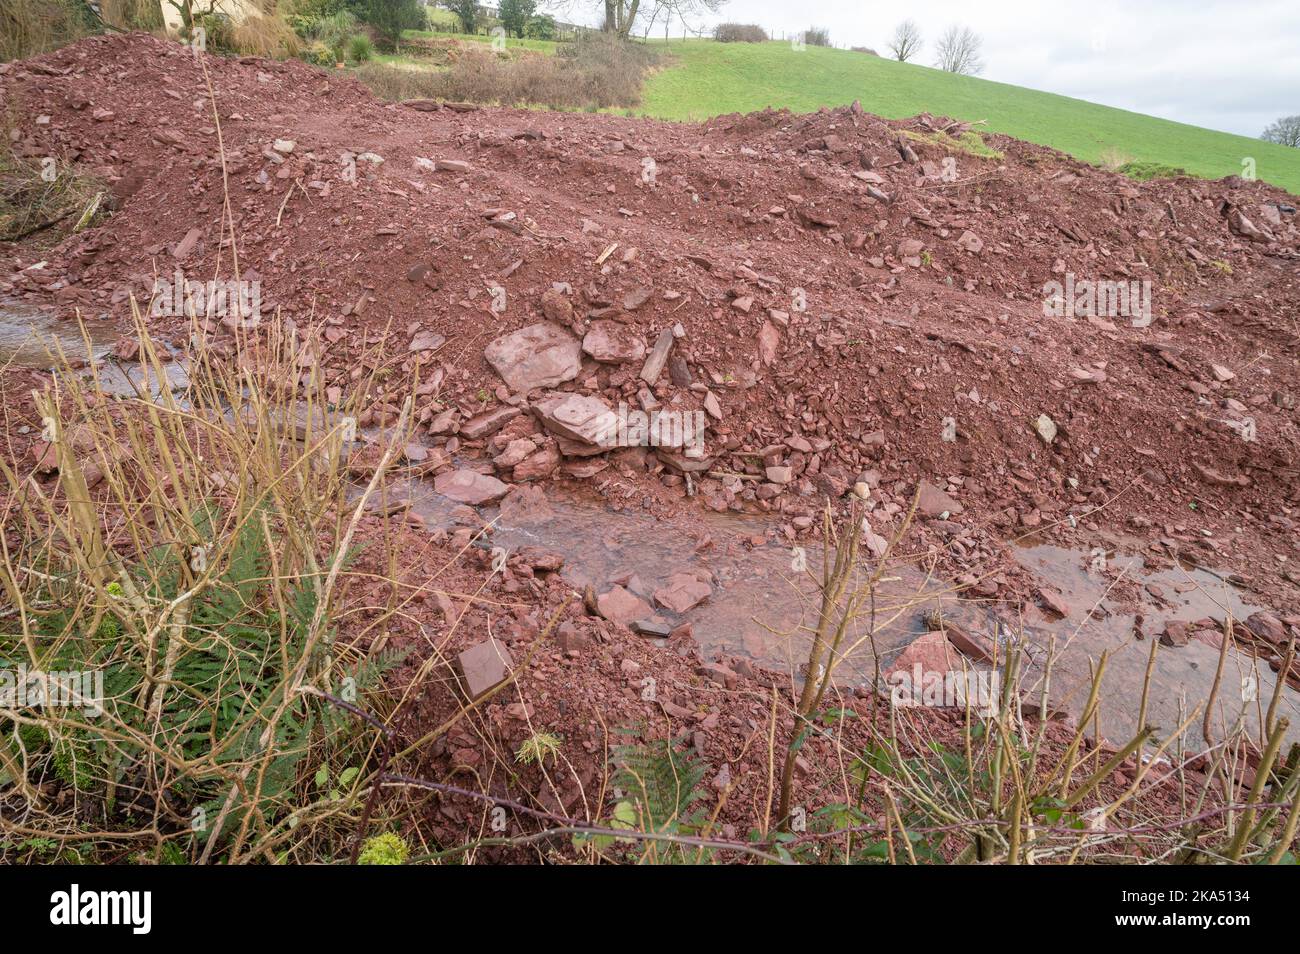 El agricultor ha retratado el curso de agua liberando sedimentos en el arroyo causando contaminación Foto de stock